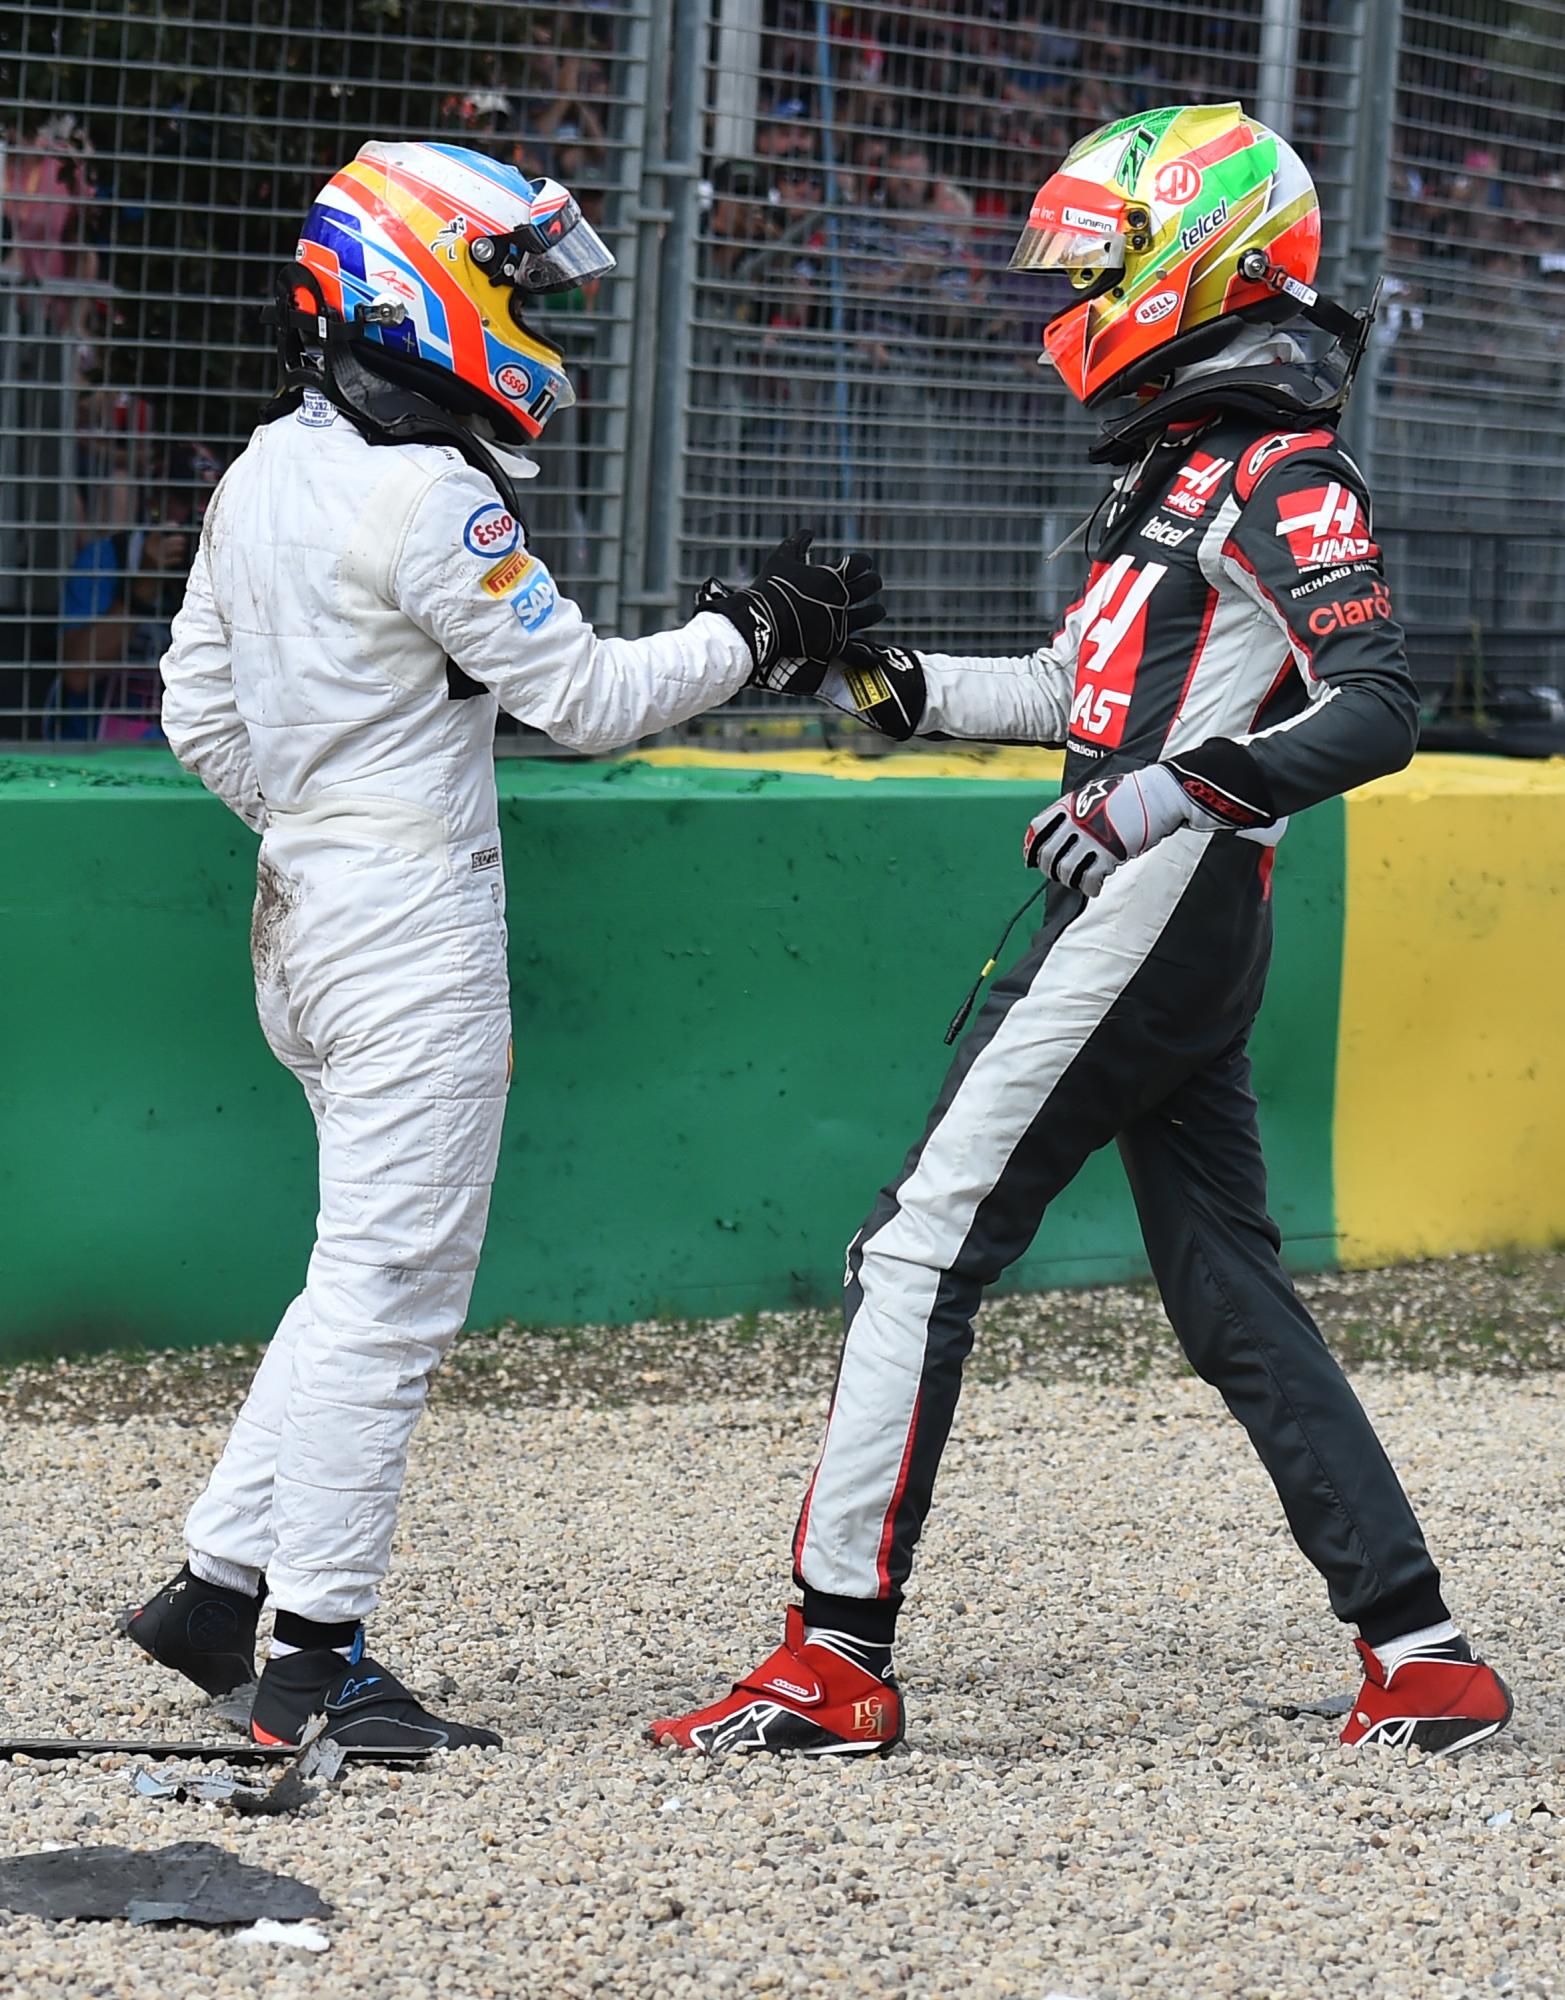 Al quedar vivos ambos pilotos, atinaron a saludarse. Así Esteban Gutiérrez, derecha, se acercó a Fernando Alonso, luego de la colisión. 